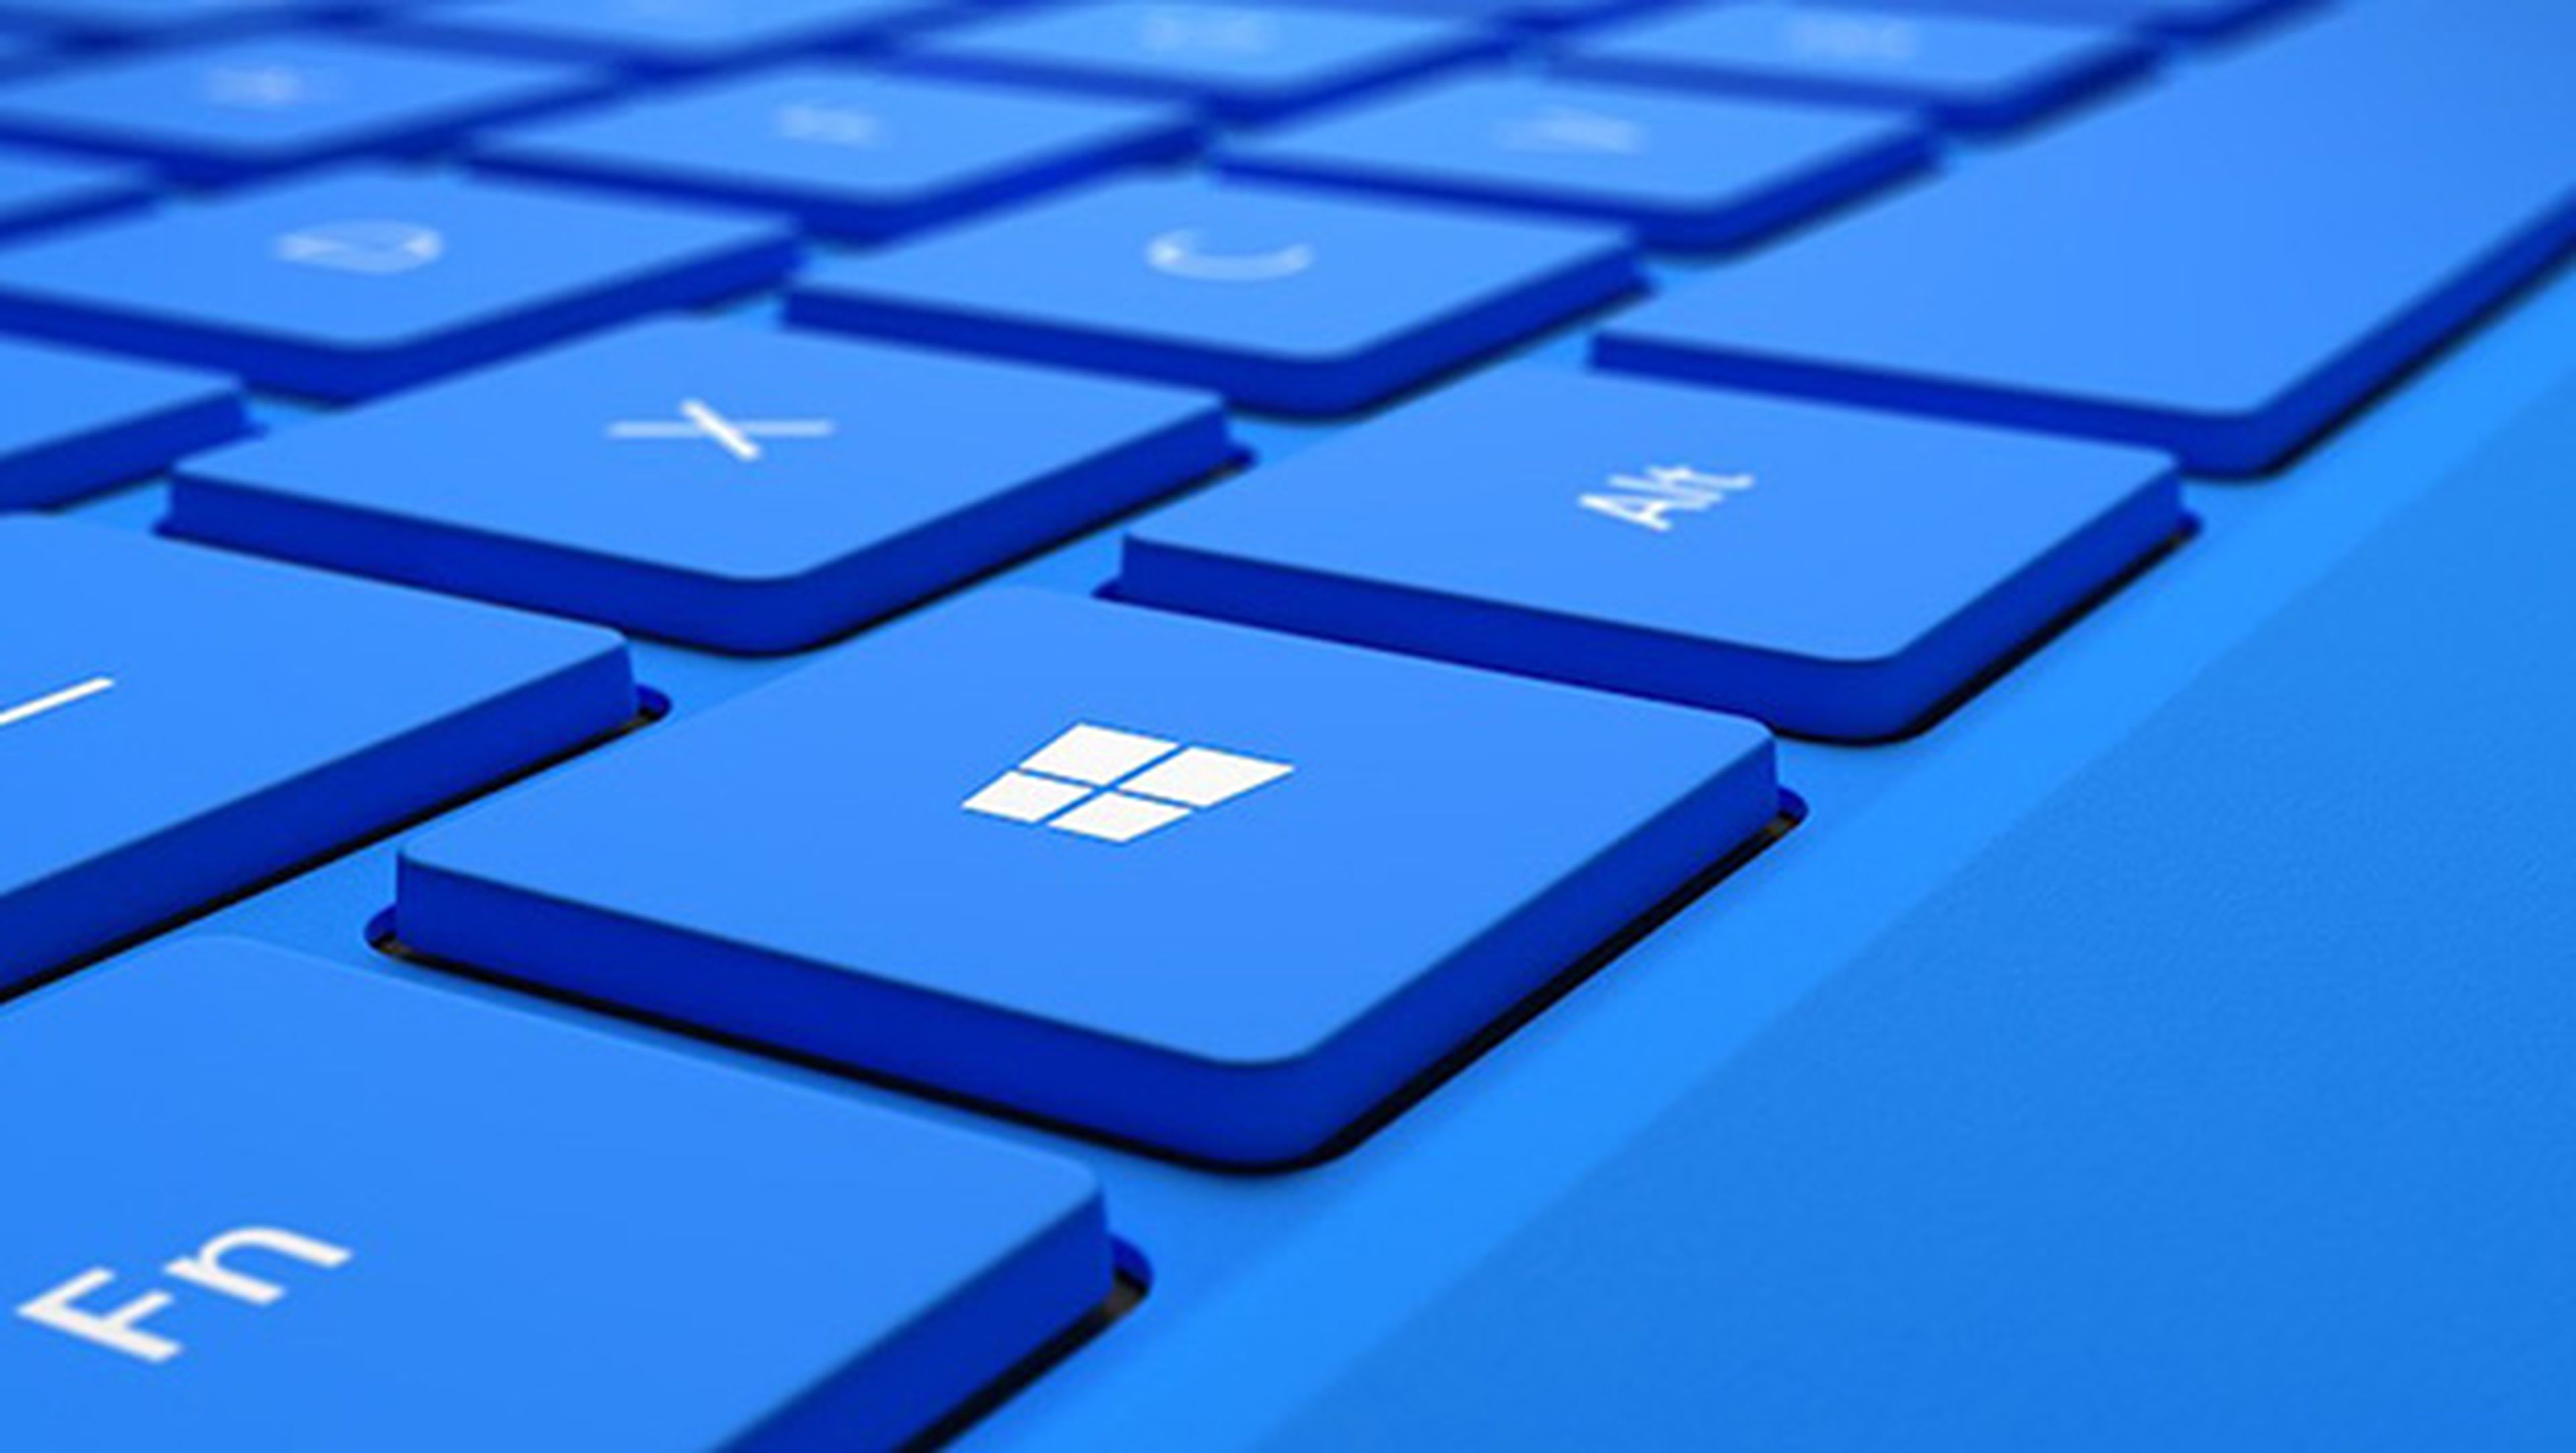 Microsoft lanzaría un modo S para hacer más seguro Windows 10